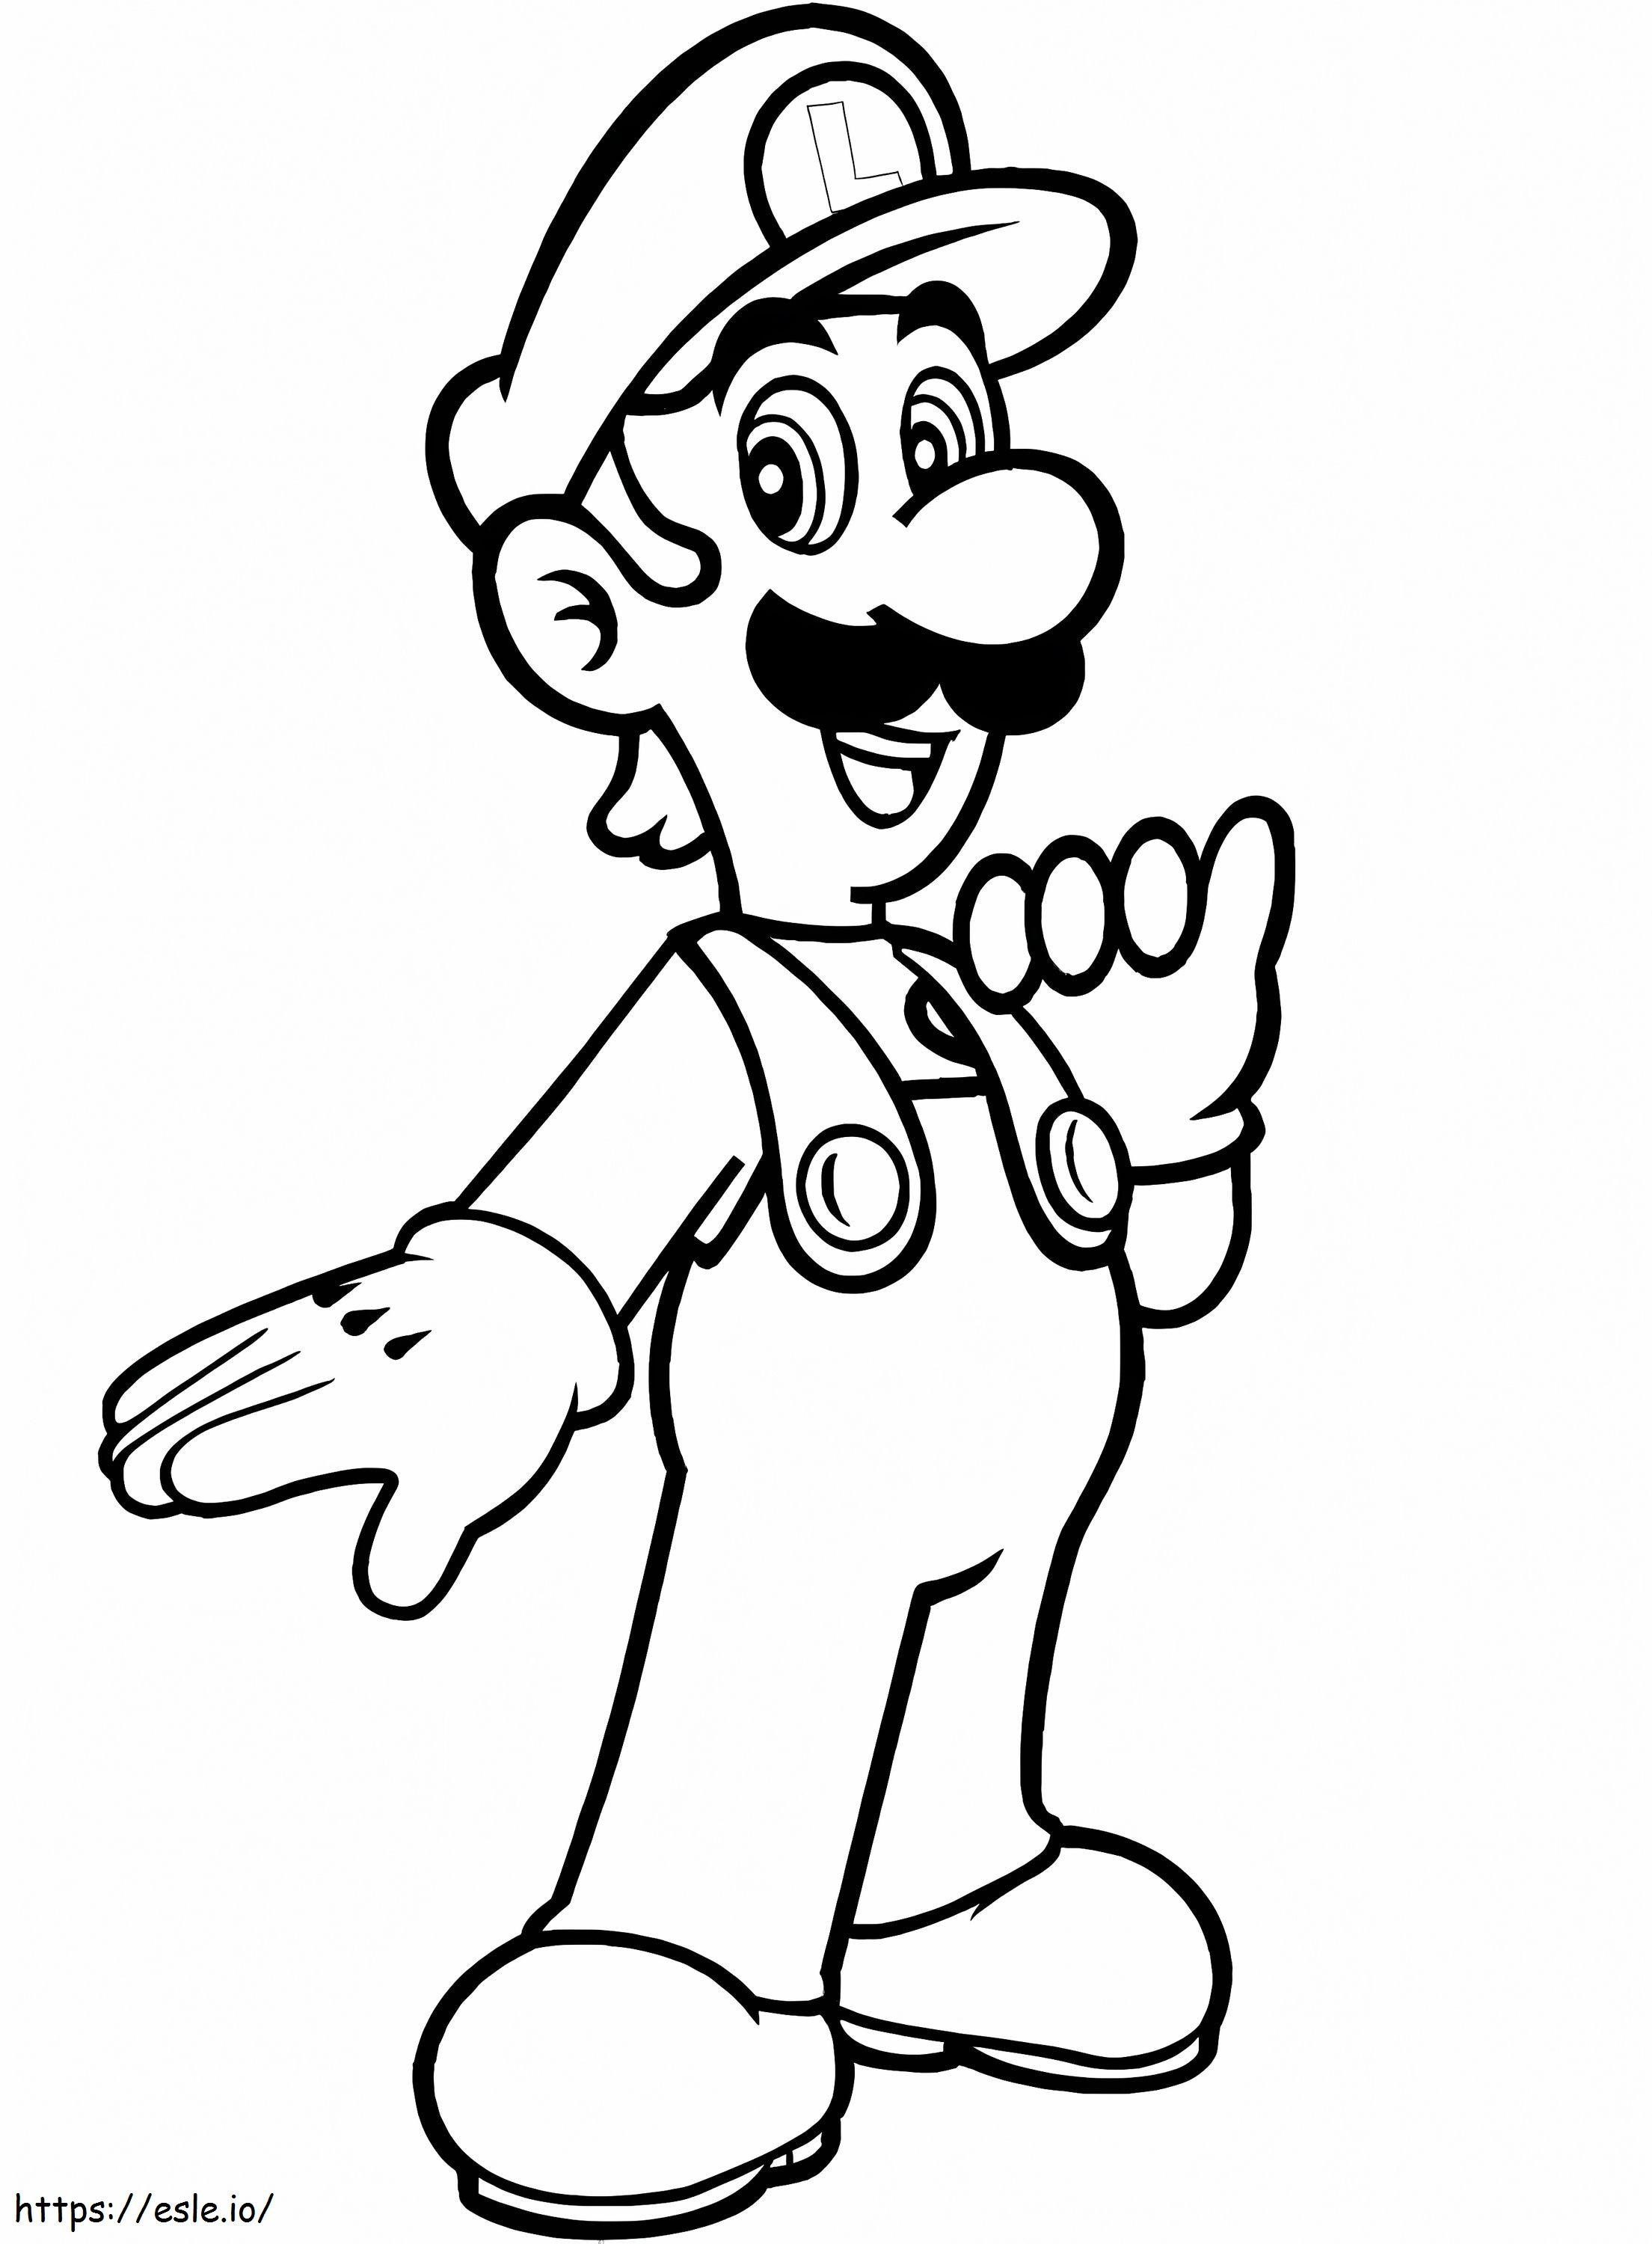 Coloriage Luigi De Mario Bros à imprimer dessin